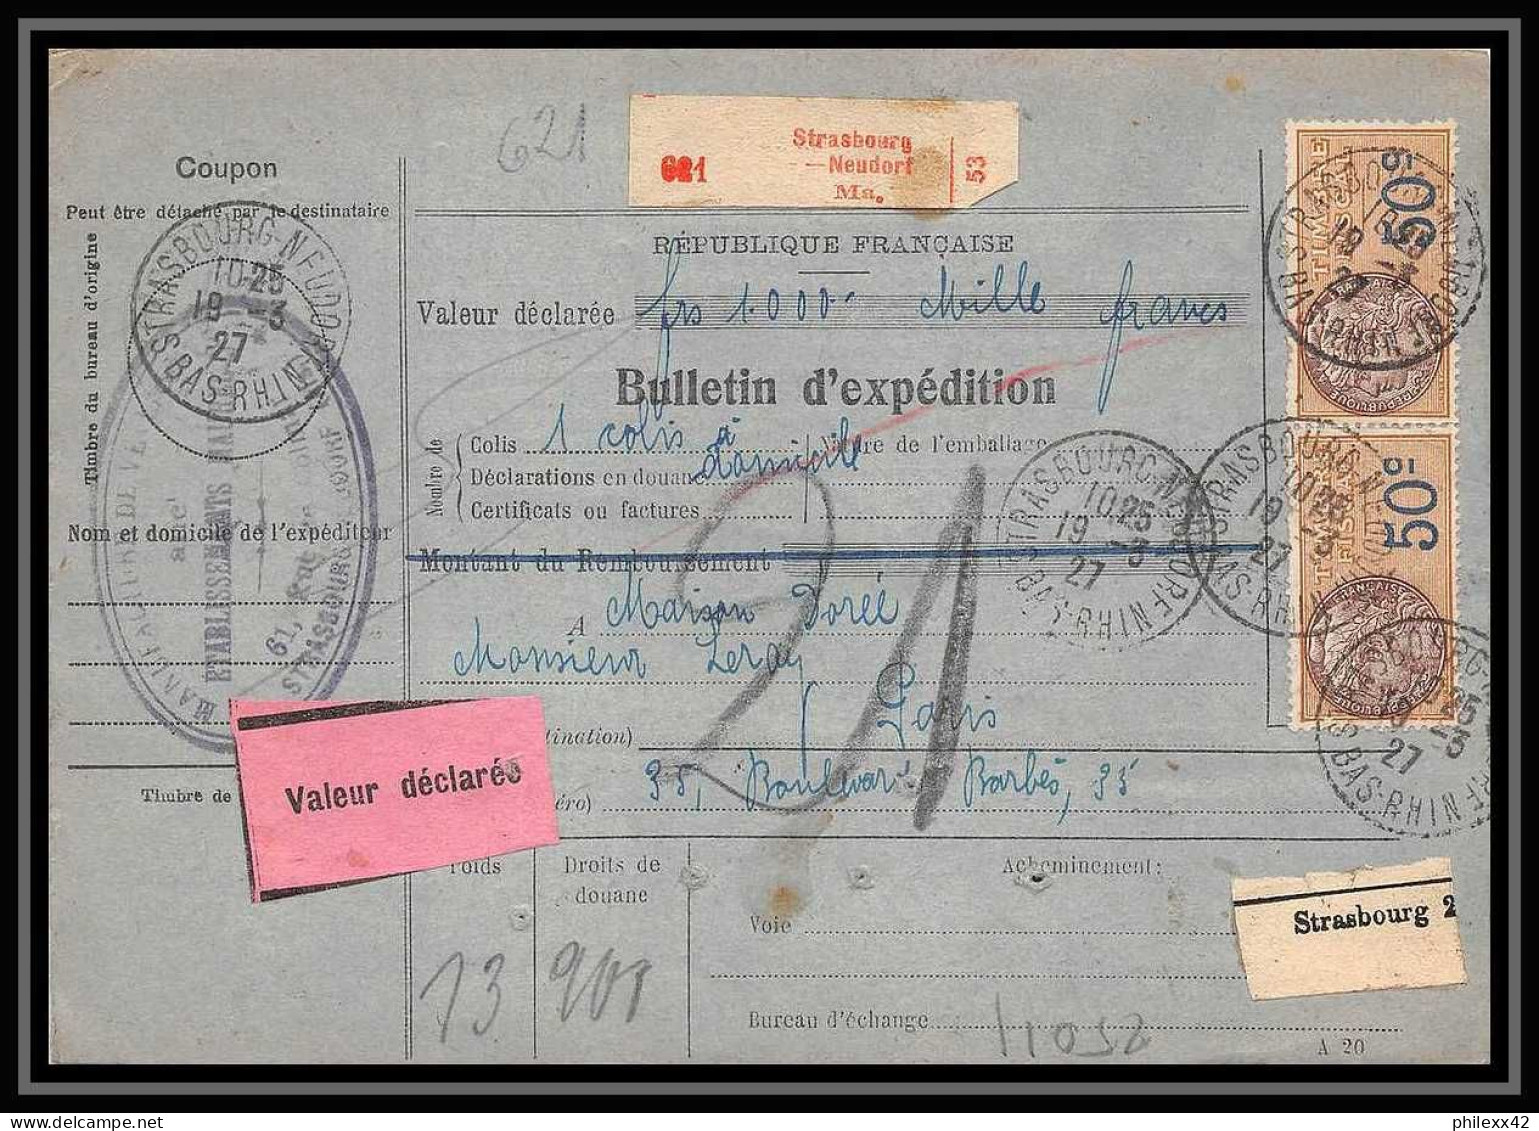 25011 Bulletin D'expédition France Colis Postaux Fiscal Haut Rhin 1927 Strasbourg Semeuse Merson 123 Valeur Déclarée - Briefe U. Dokumente